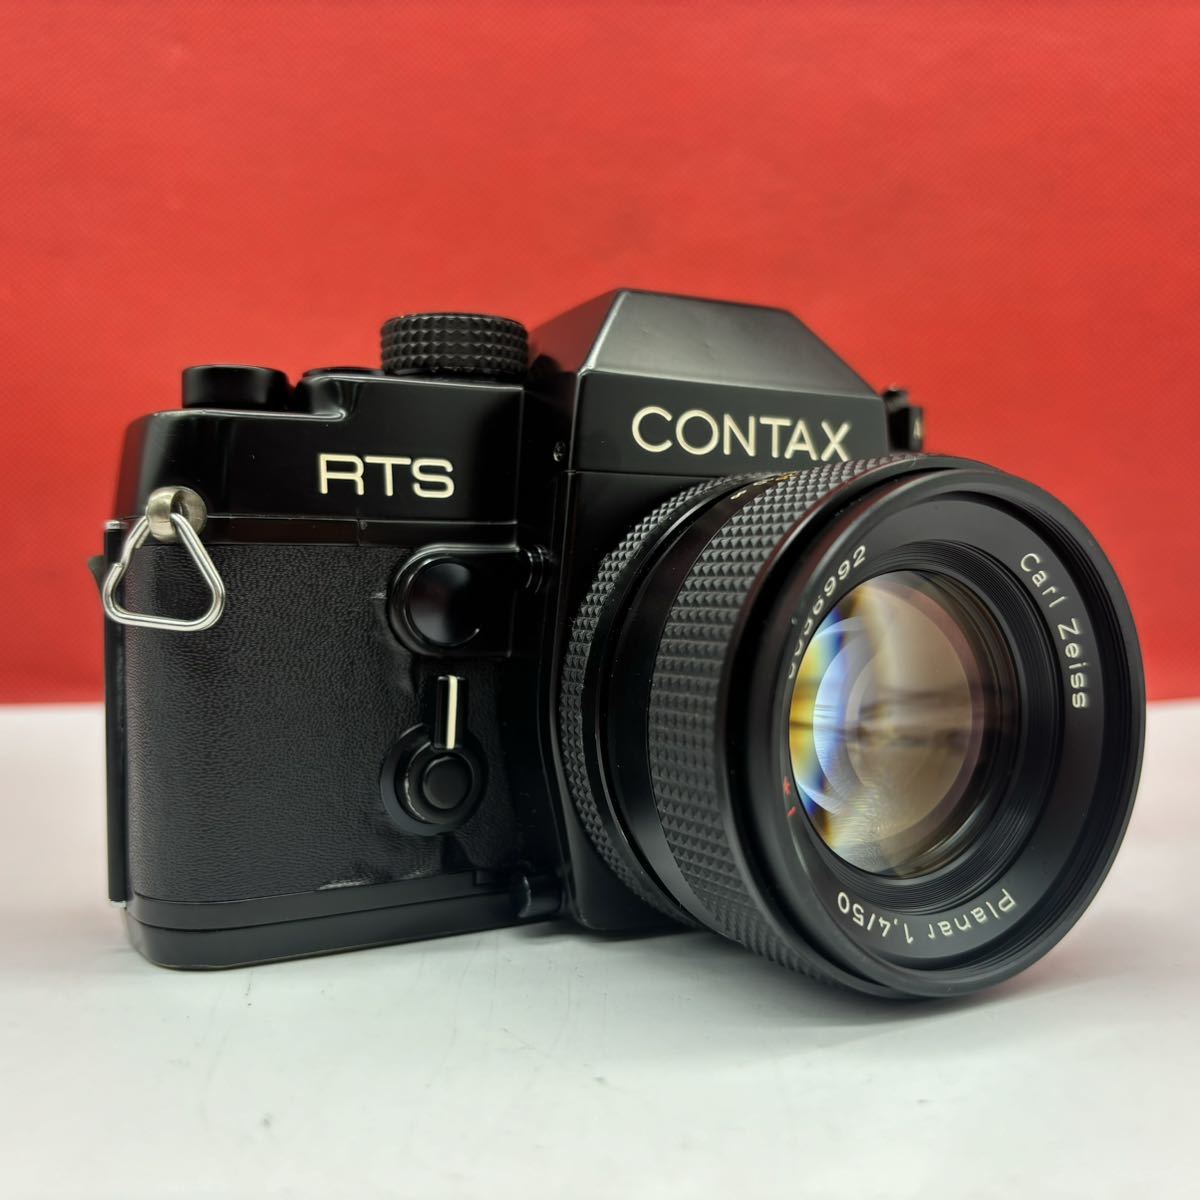 ◆ CONTAX RTS フィルムカメラ 一眼レフカメラ ボディ Carl Zeiss Planar 1.4/50 T* シャッター、露出計OK コンタックス_画像4